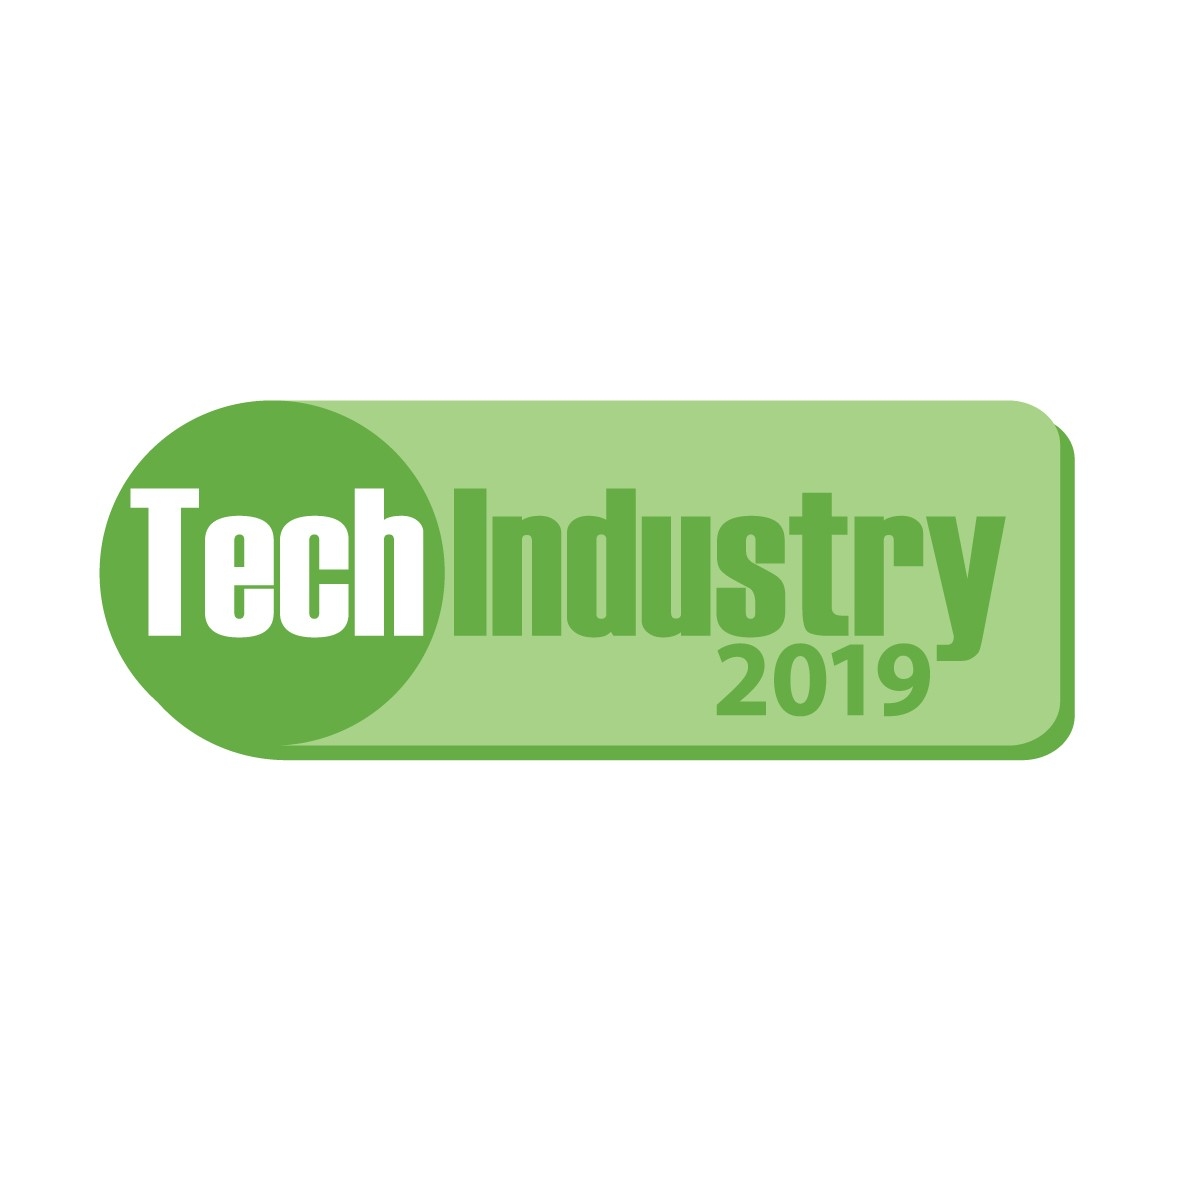 Tech_Industry_2019_logo